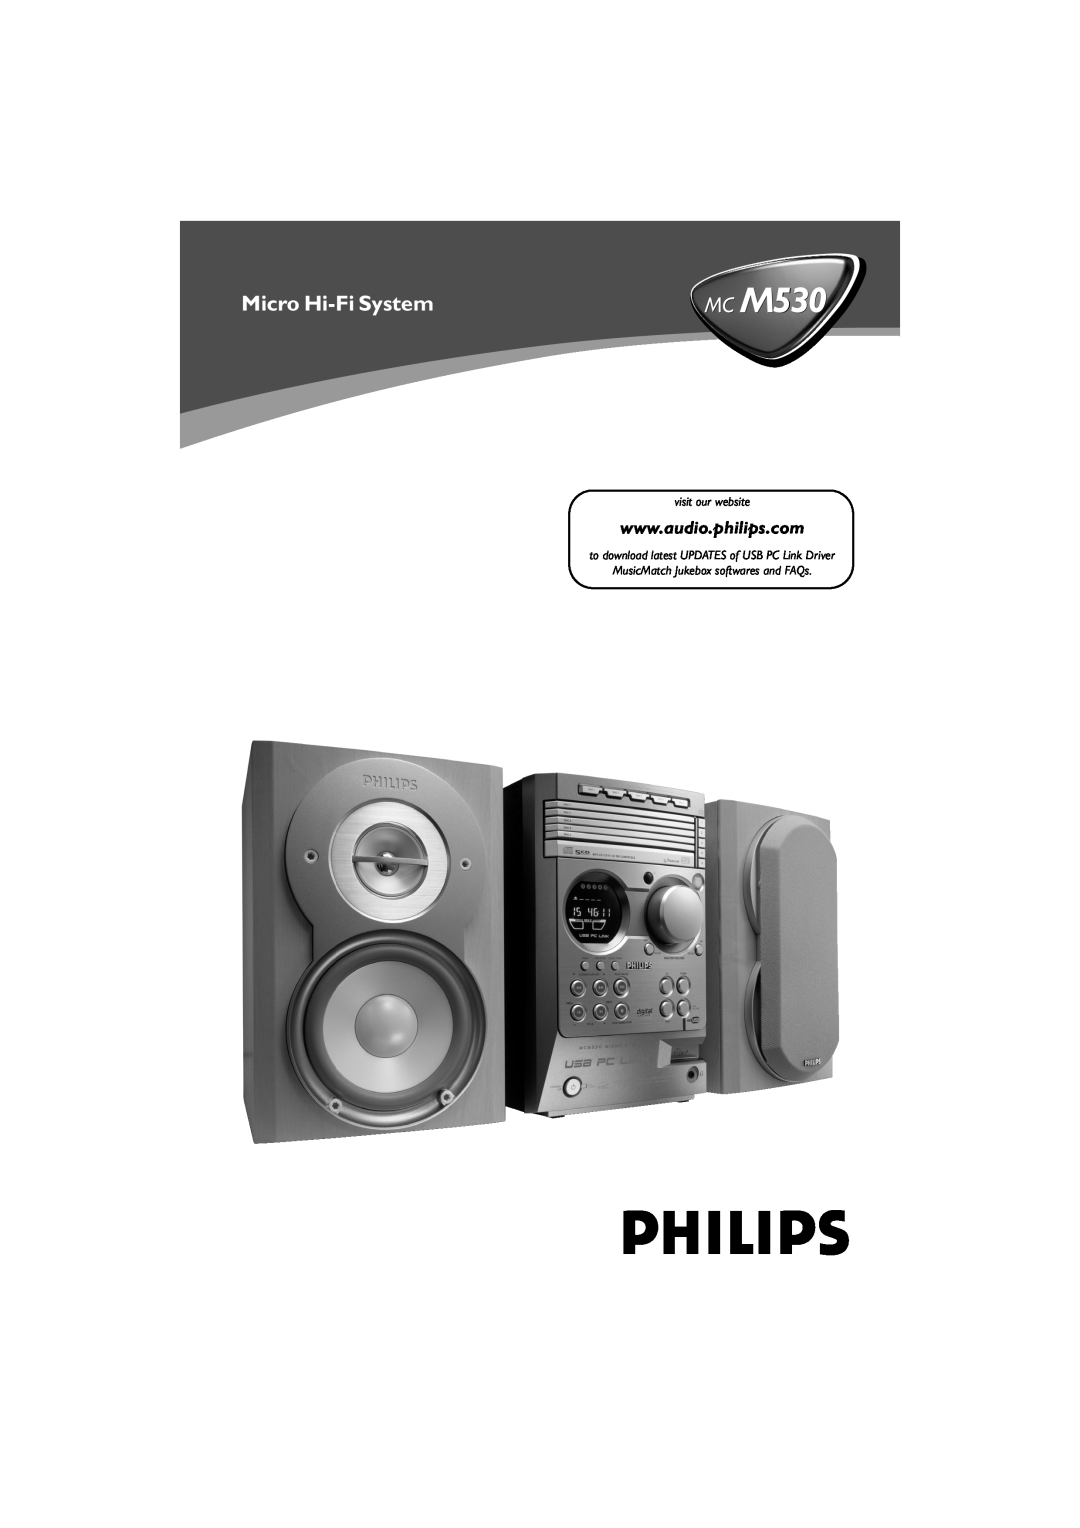 Philips MC M530 manual Micro Hi-FiSystem 